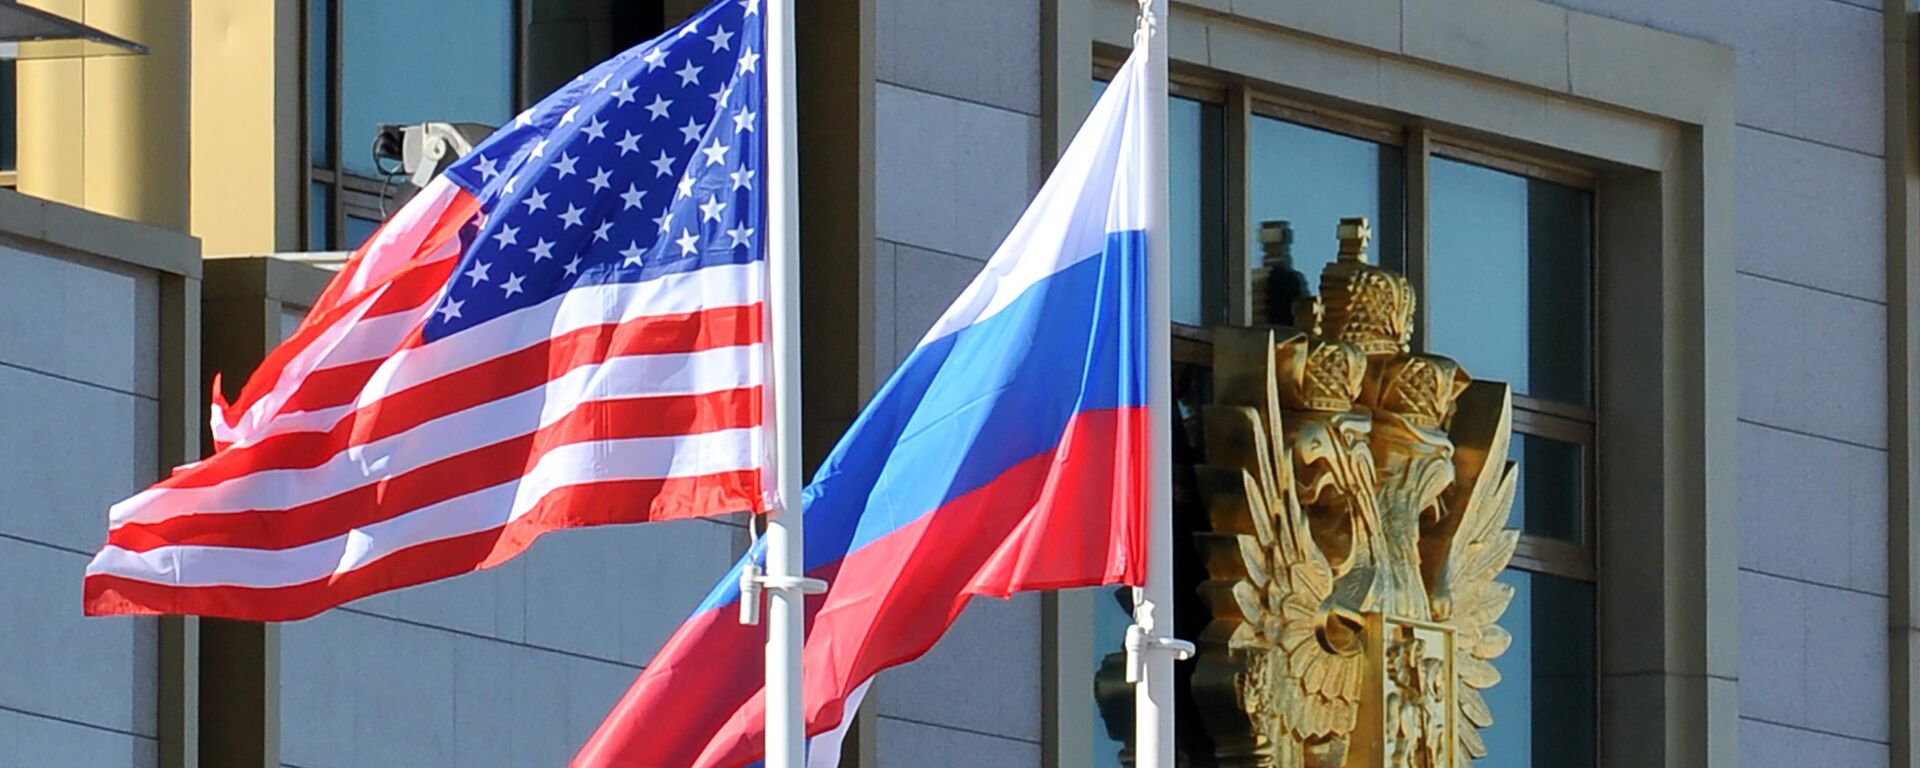 Banderas de EEUU y Rusia - Sputnik Mundo, 1920, 03.02.2021